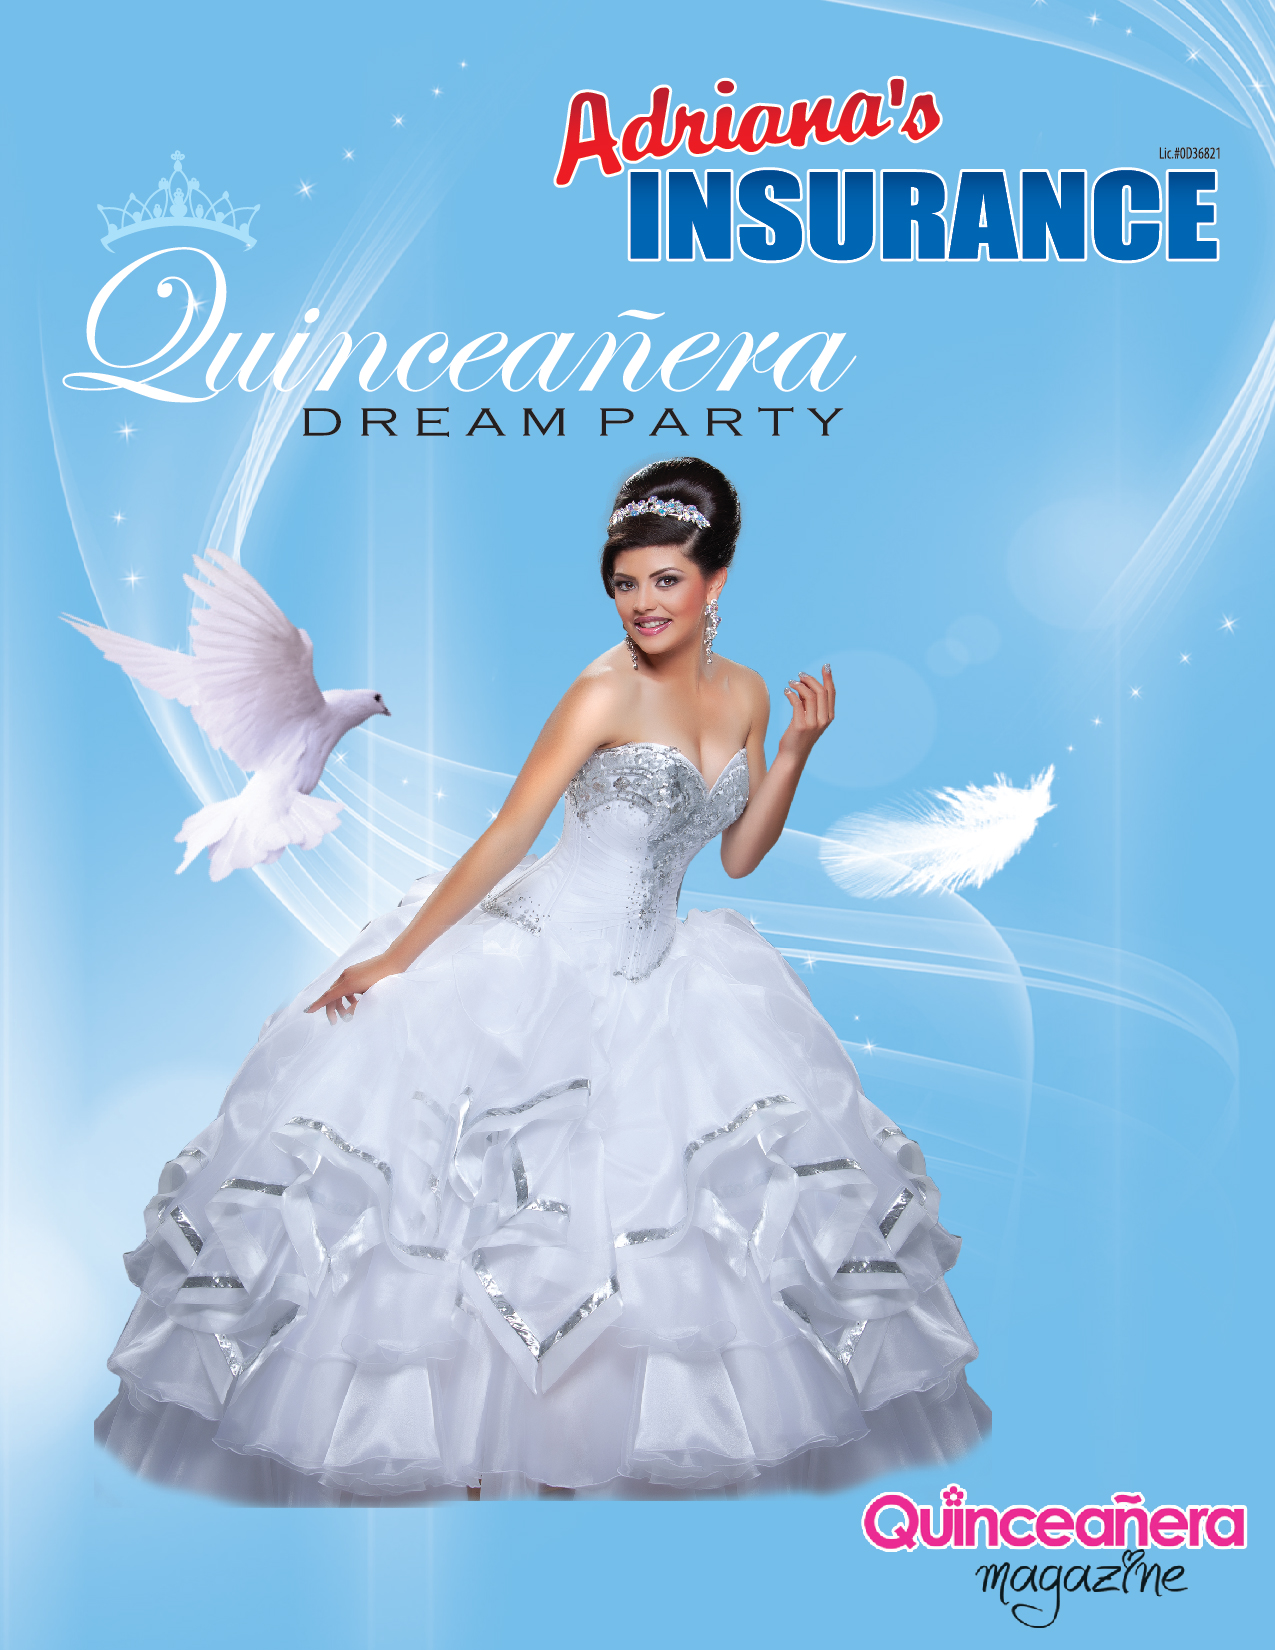 Adrianas Insurance Helping Dreams Come True